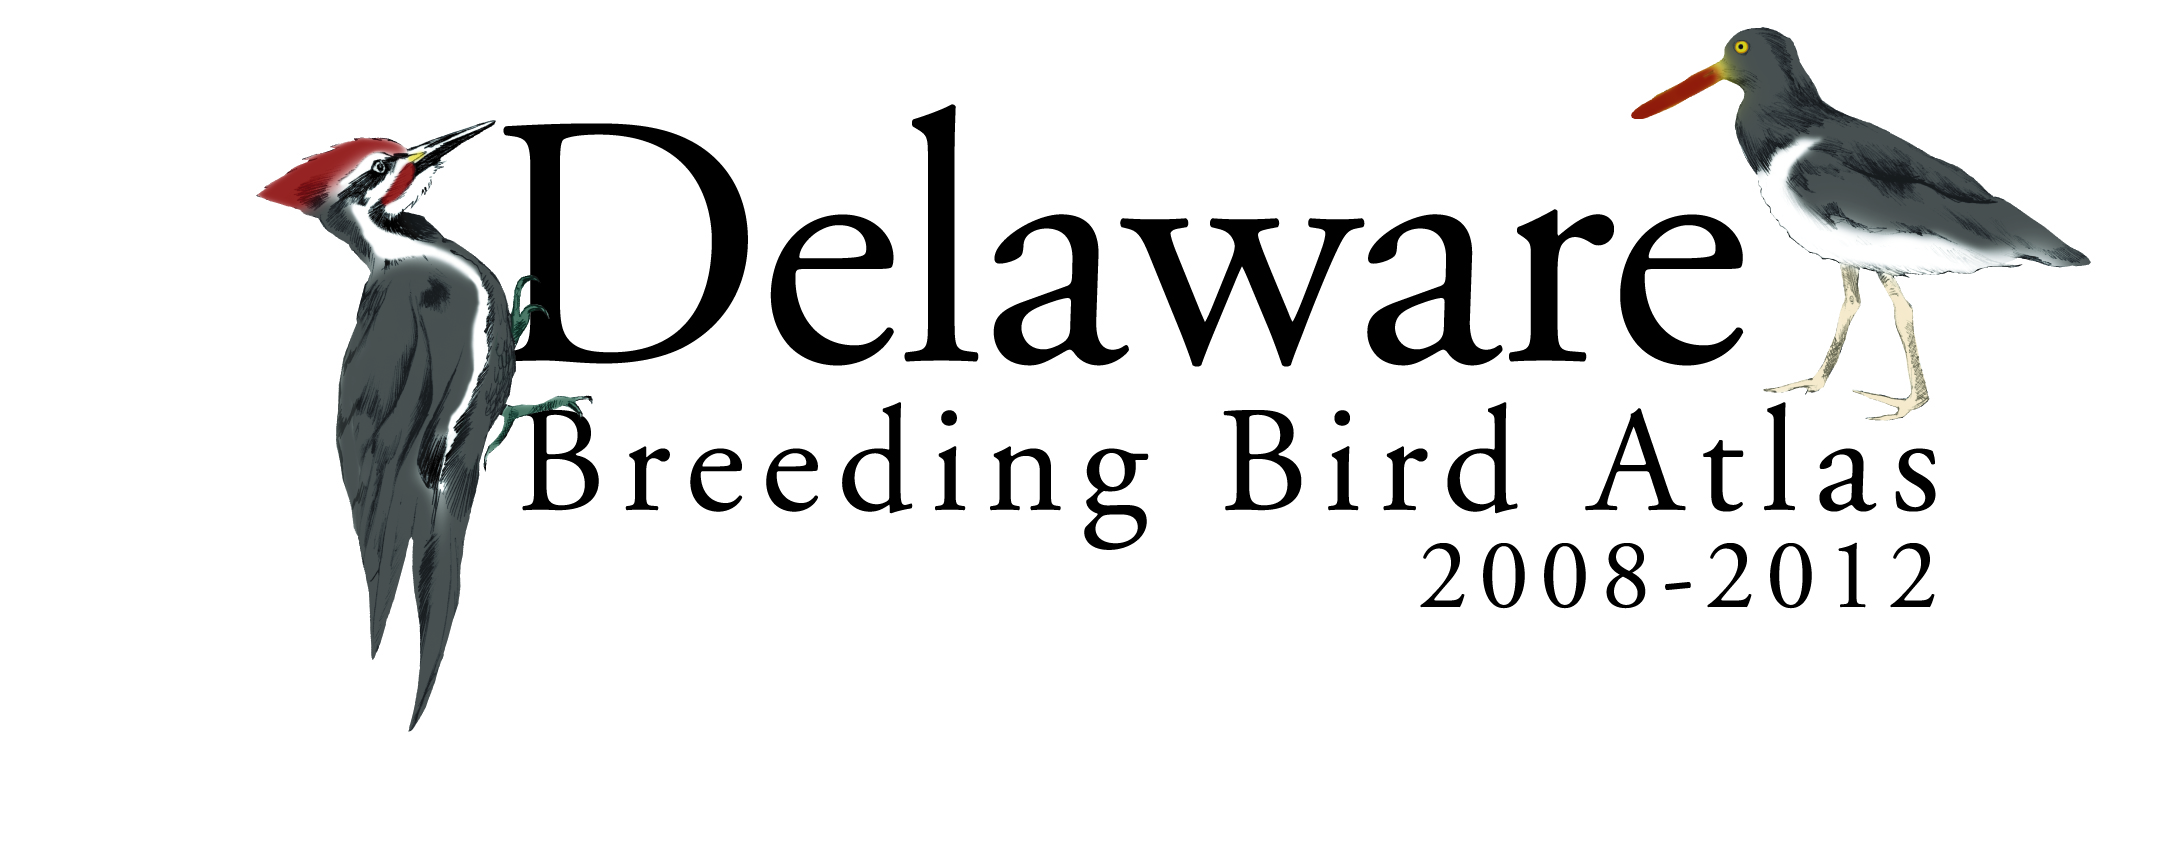 Breeding Birding Logo 4C